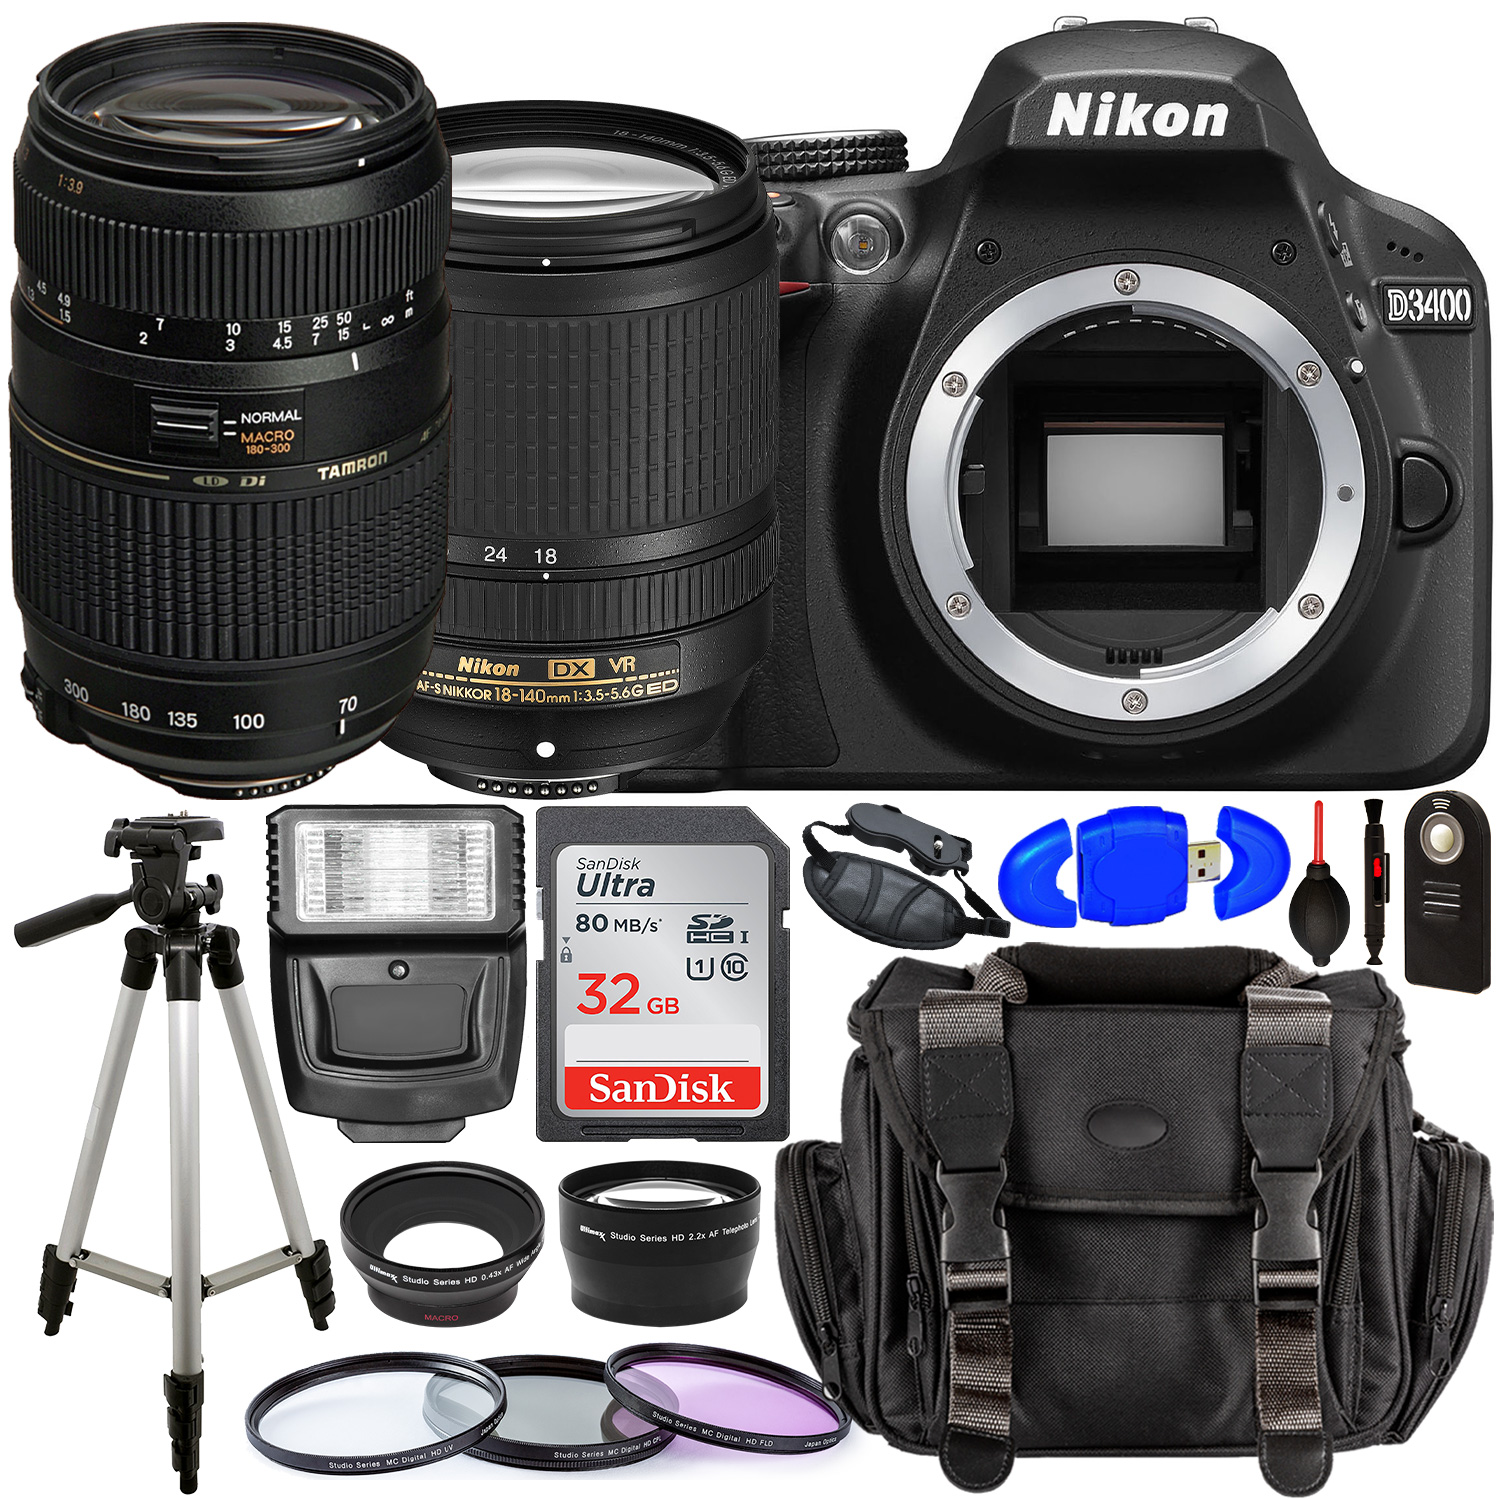 Nikon D3400 DSLR Camera with 18-140mm Lens (Black) â?? 1571 with Tamron 70-300mm Lens for Nikon AF - AF017NII-700 and Accessory Bundle